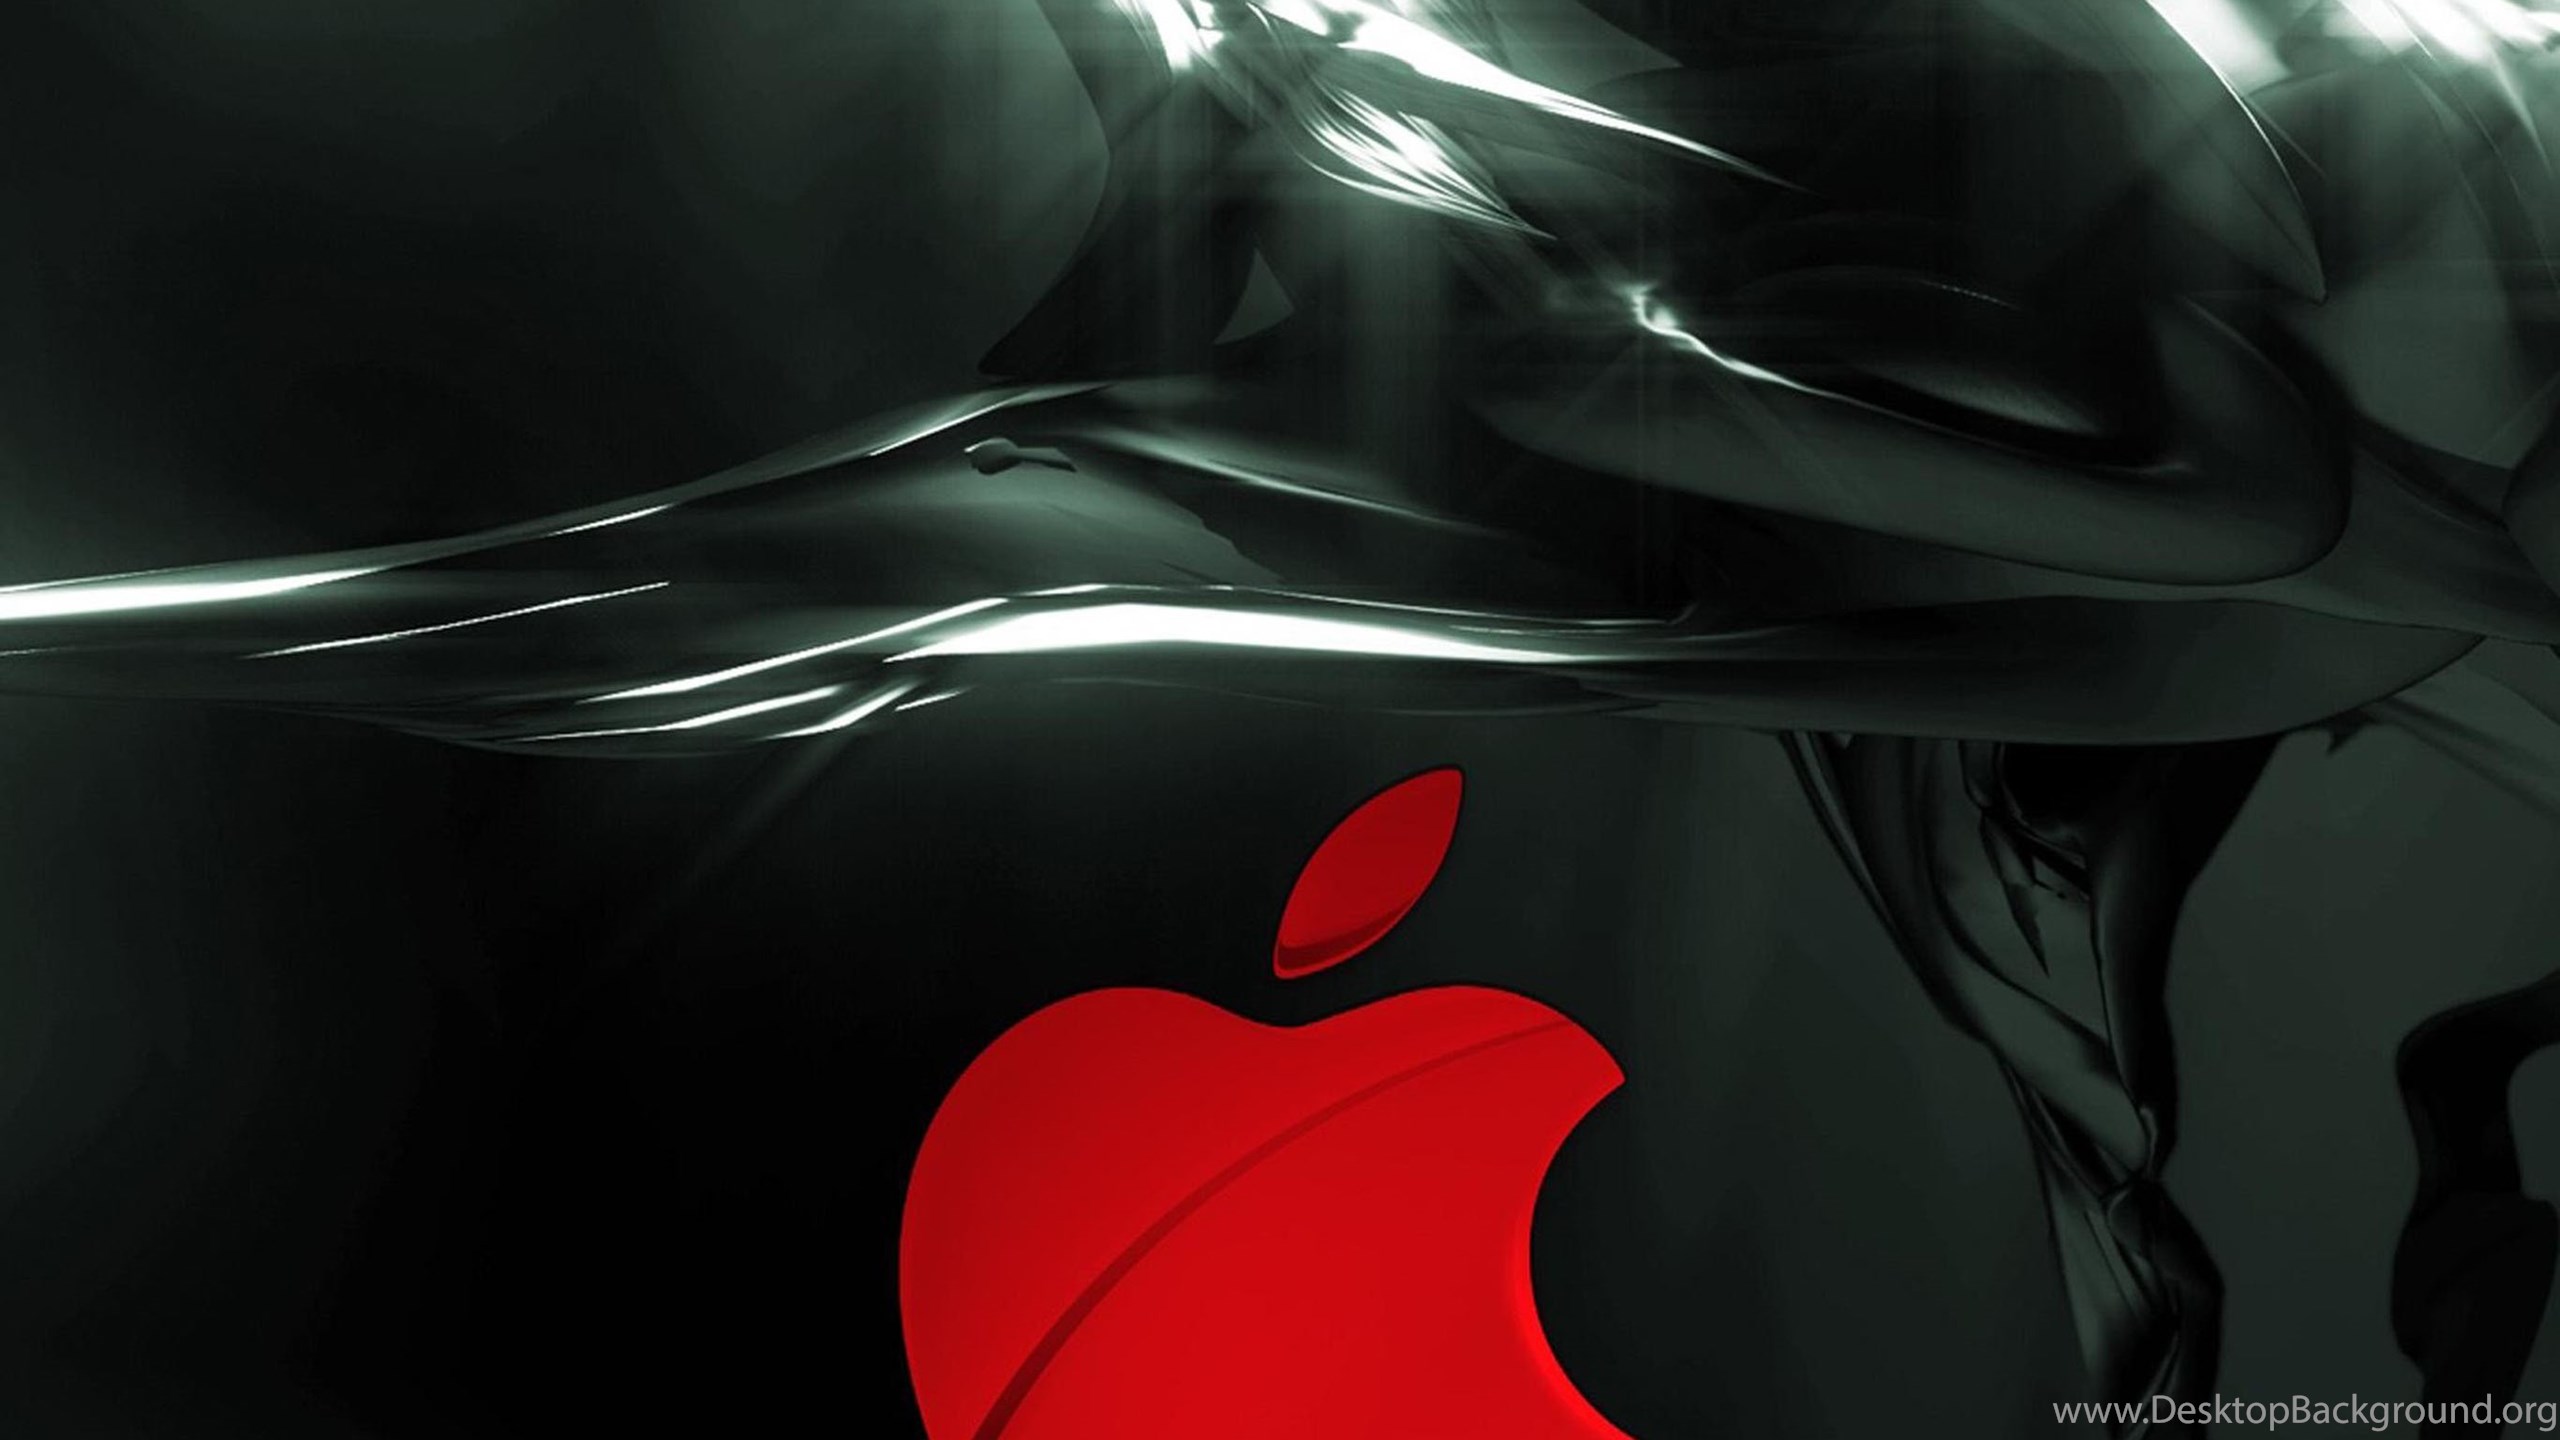 Red Apple 02 iPad Pro Wallpapers Desktop Background